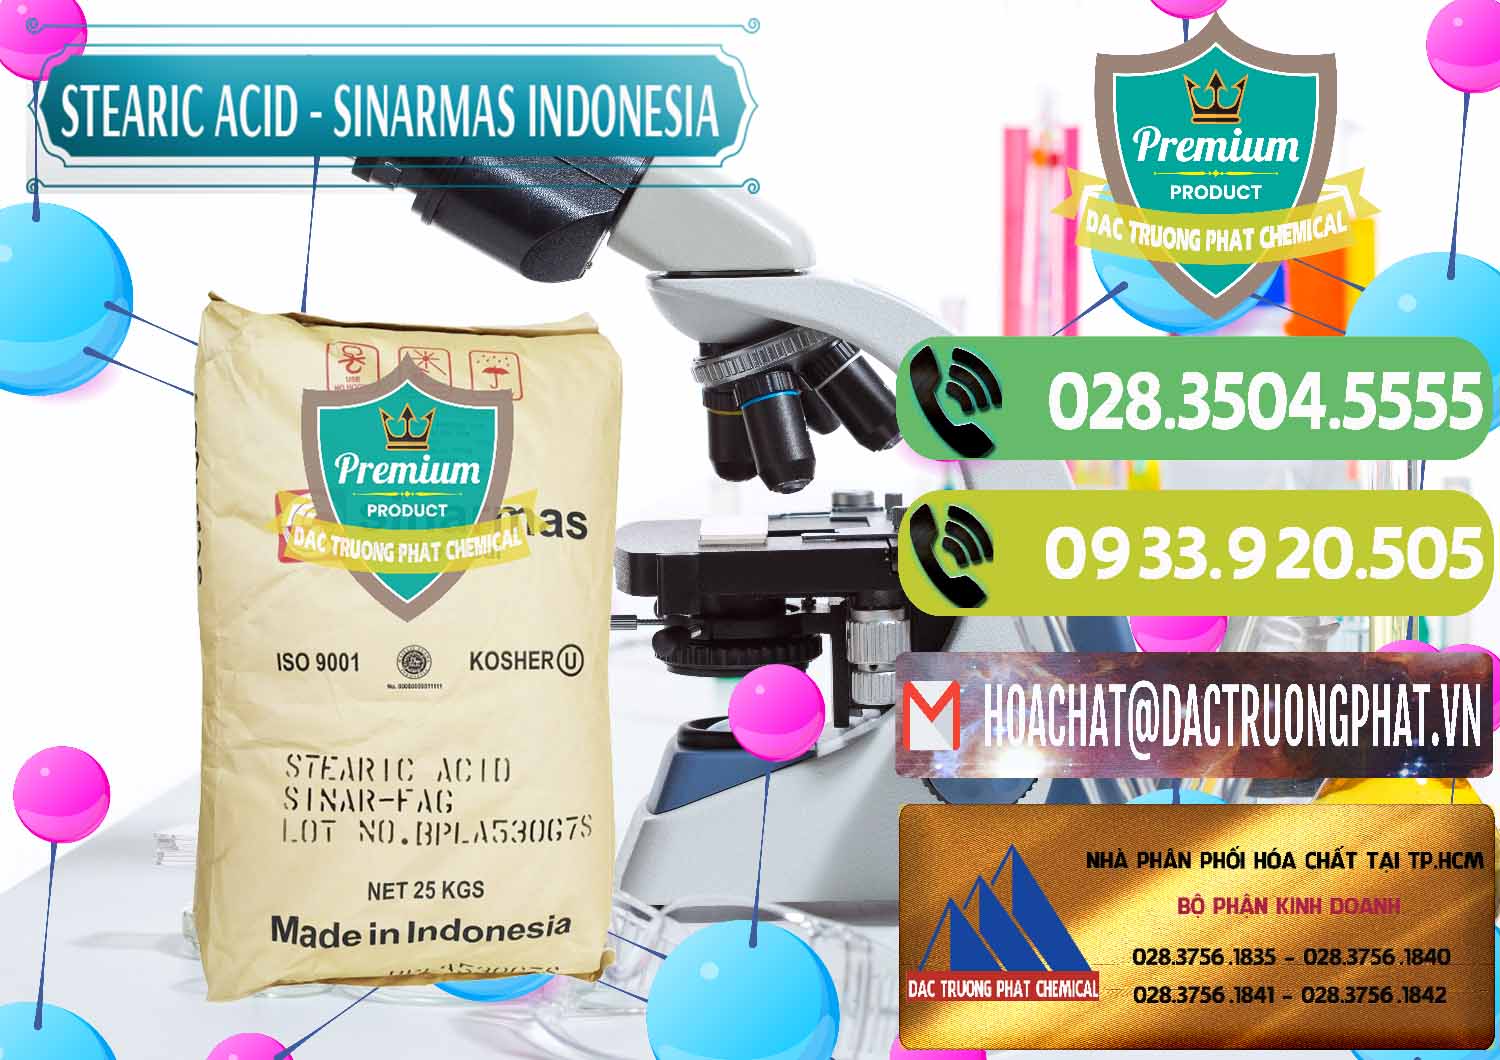 Cty bán ( cung cấp ) Axit Stearic - Stearic Acid Sinarmas Indonesia - 0389 - Nơi nhập khẩu ( cung cấp ) hóa chất tại TP.HCM - hoachatmientay.vn